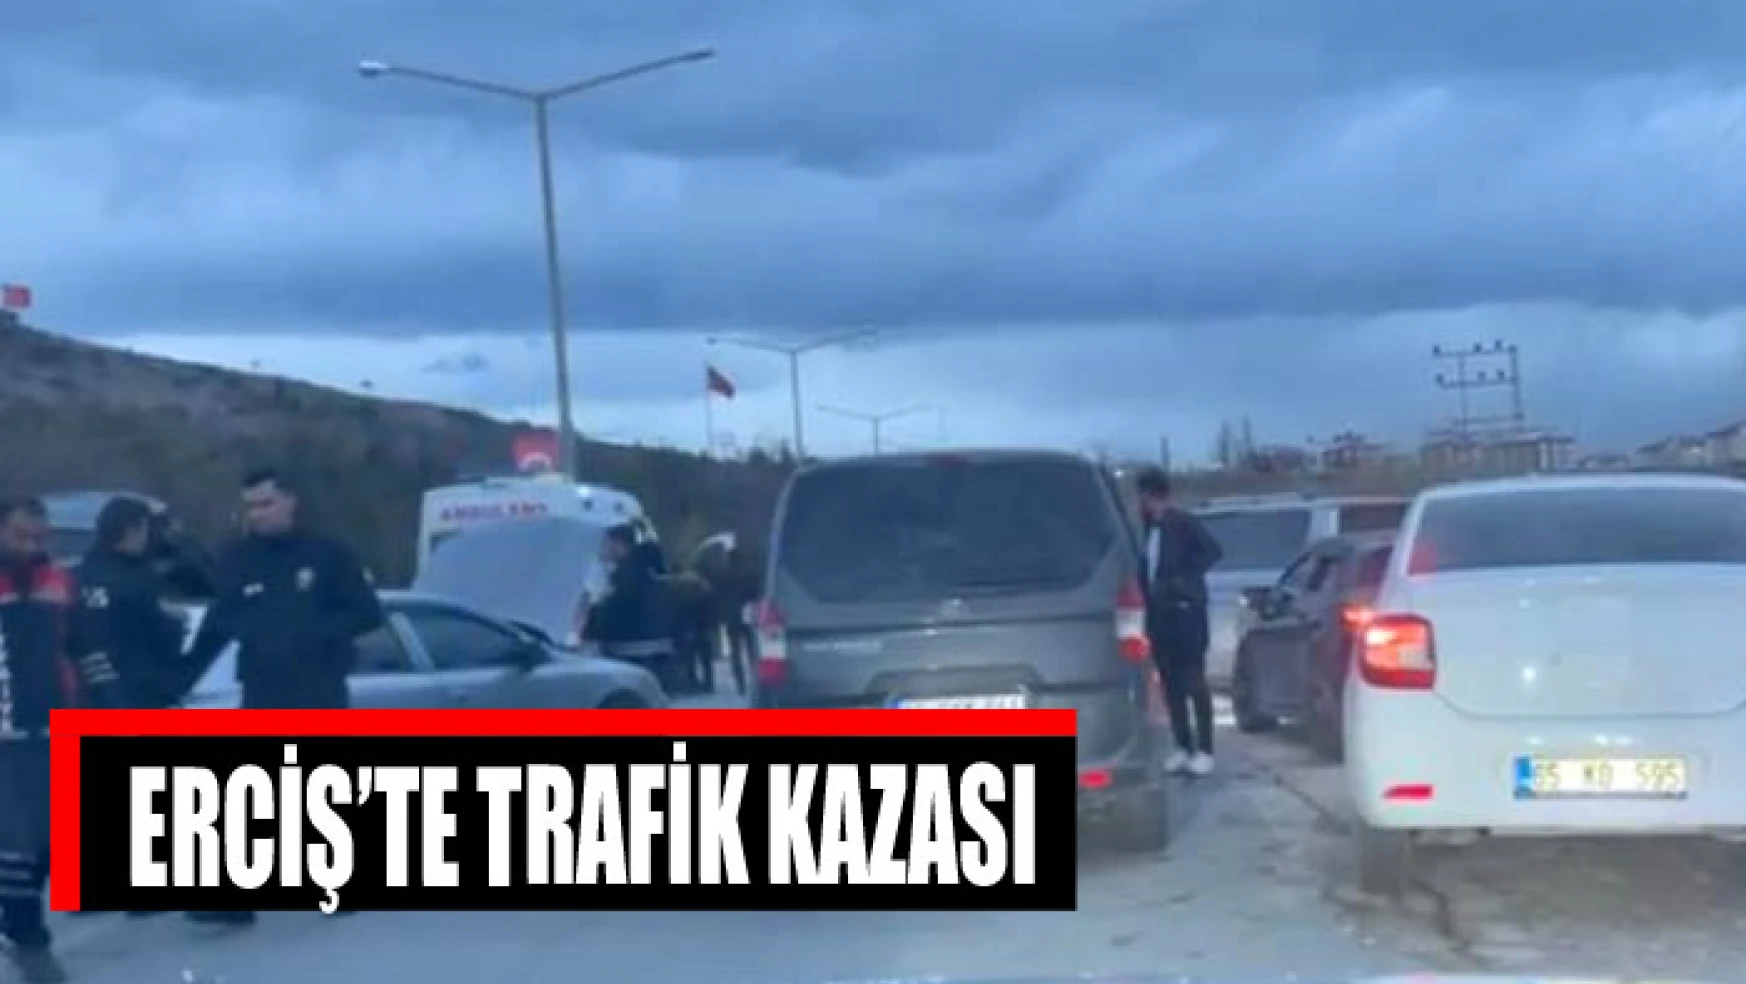  Erciş'te trafik kazası